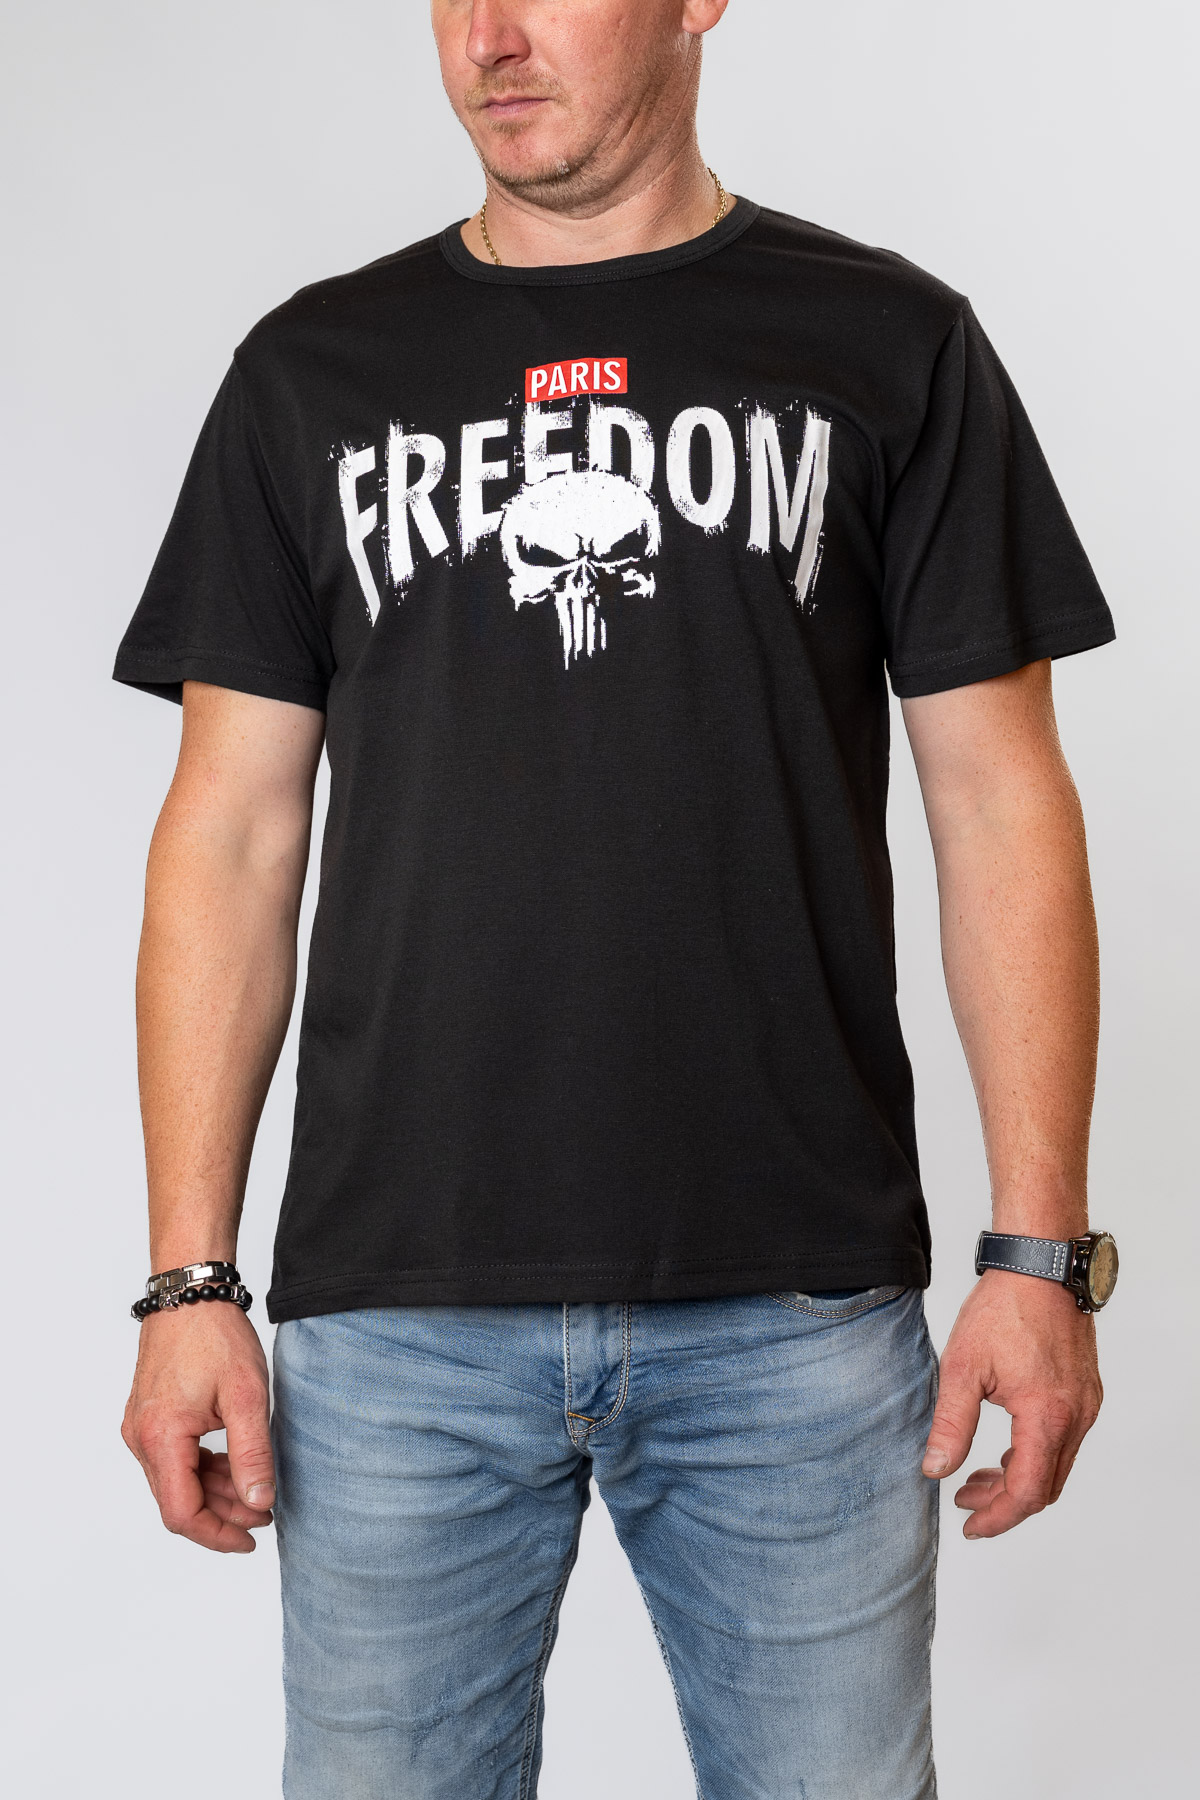 Pánske tričko PARIS FREEDOM - čierne